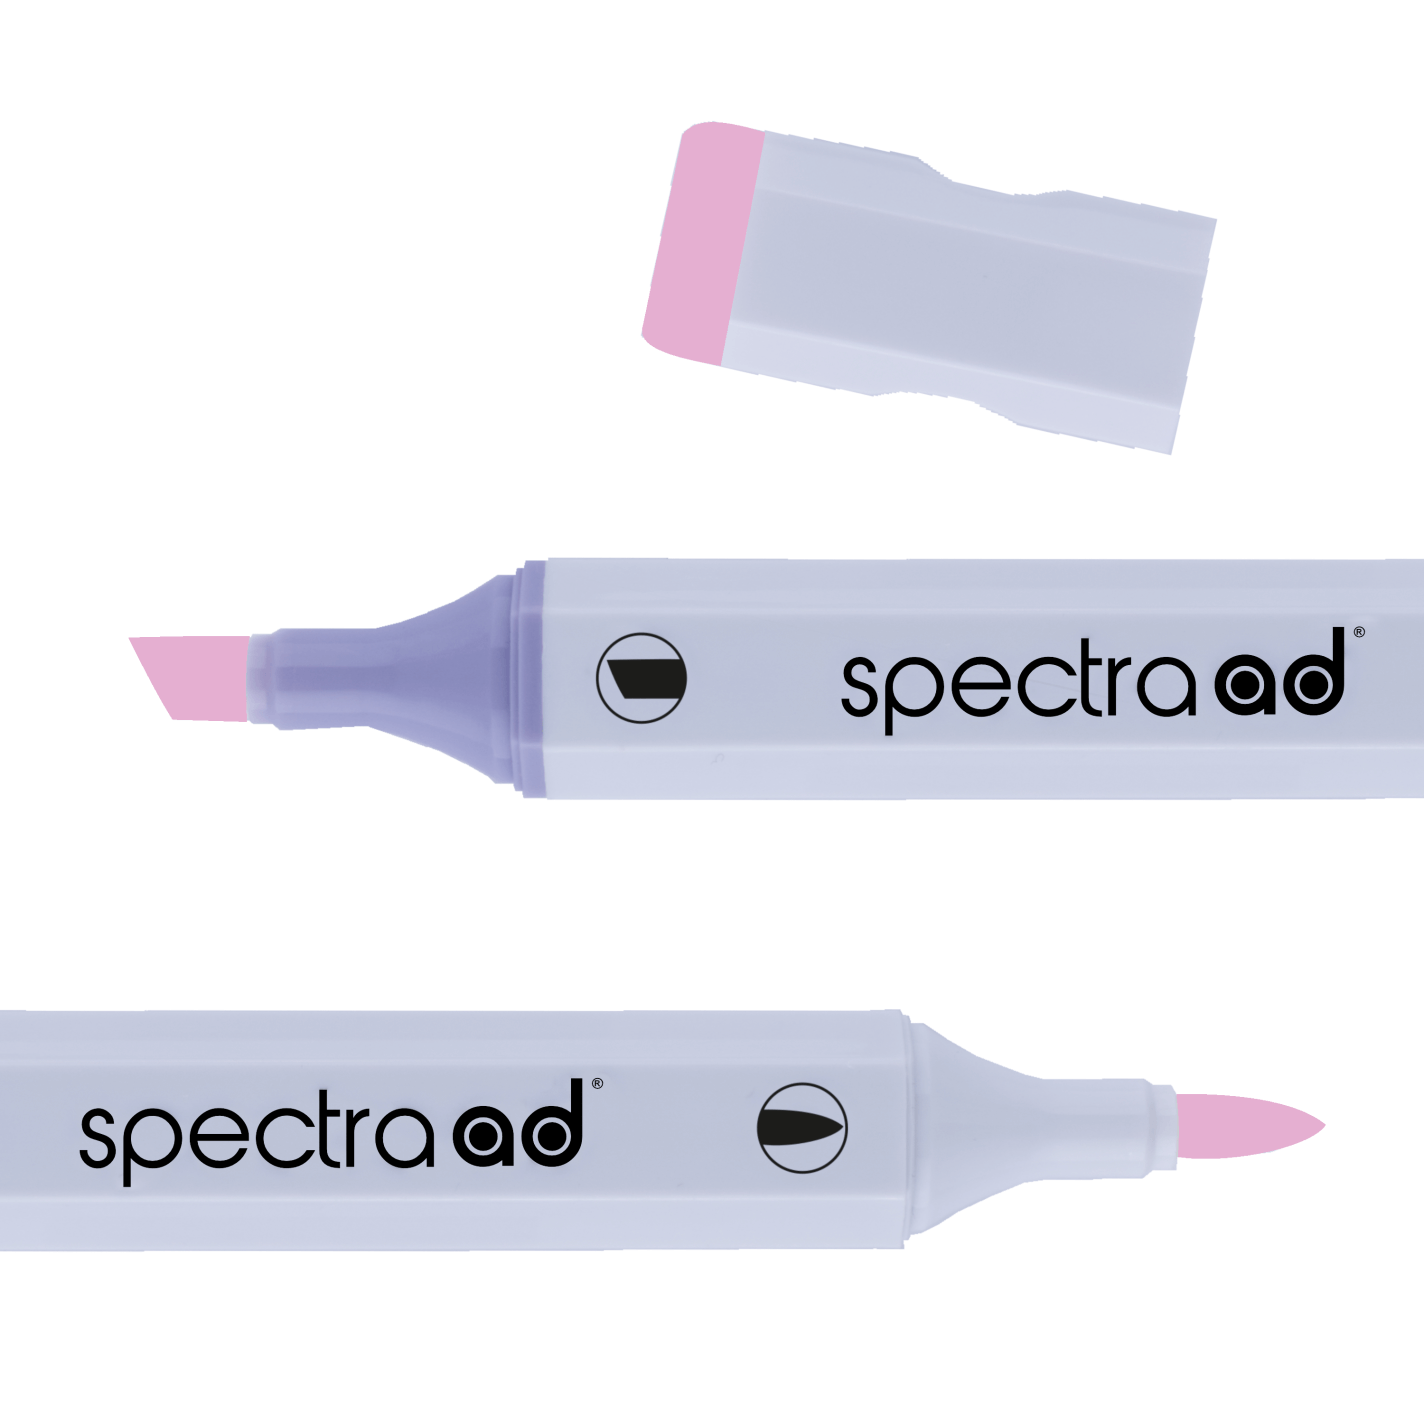 AD Marker Spectra Lavender Pink